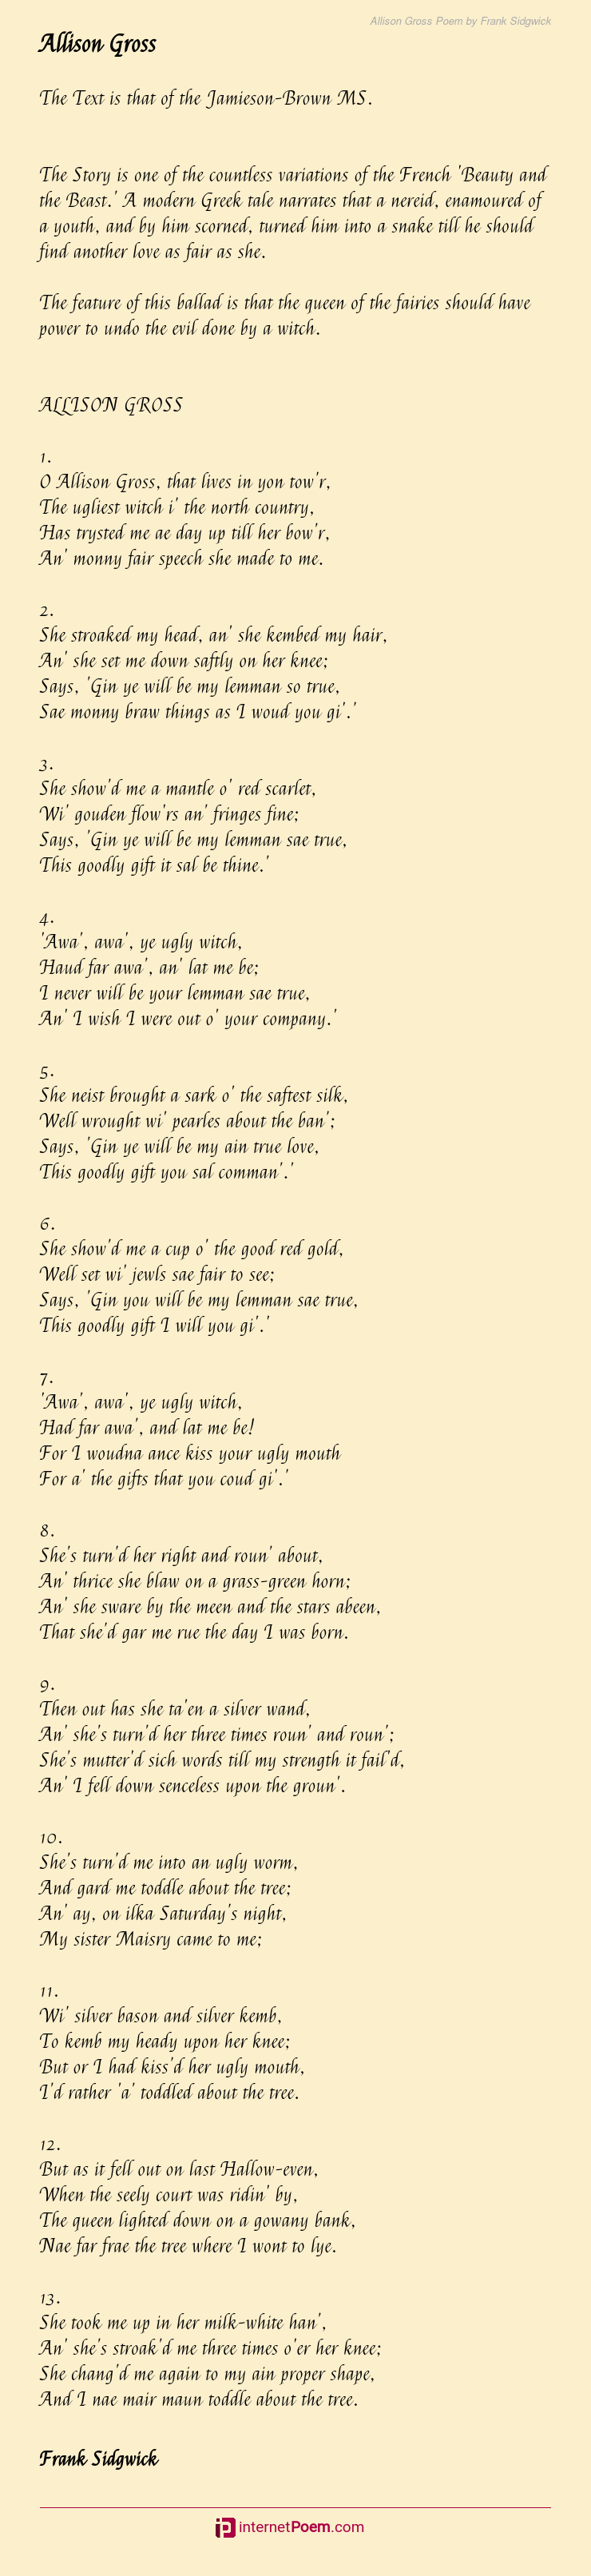 Allison Gross Poem By Frank Sidgwick 6771